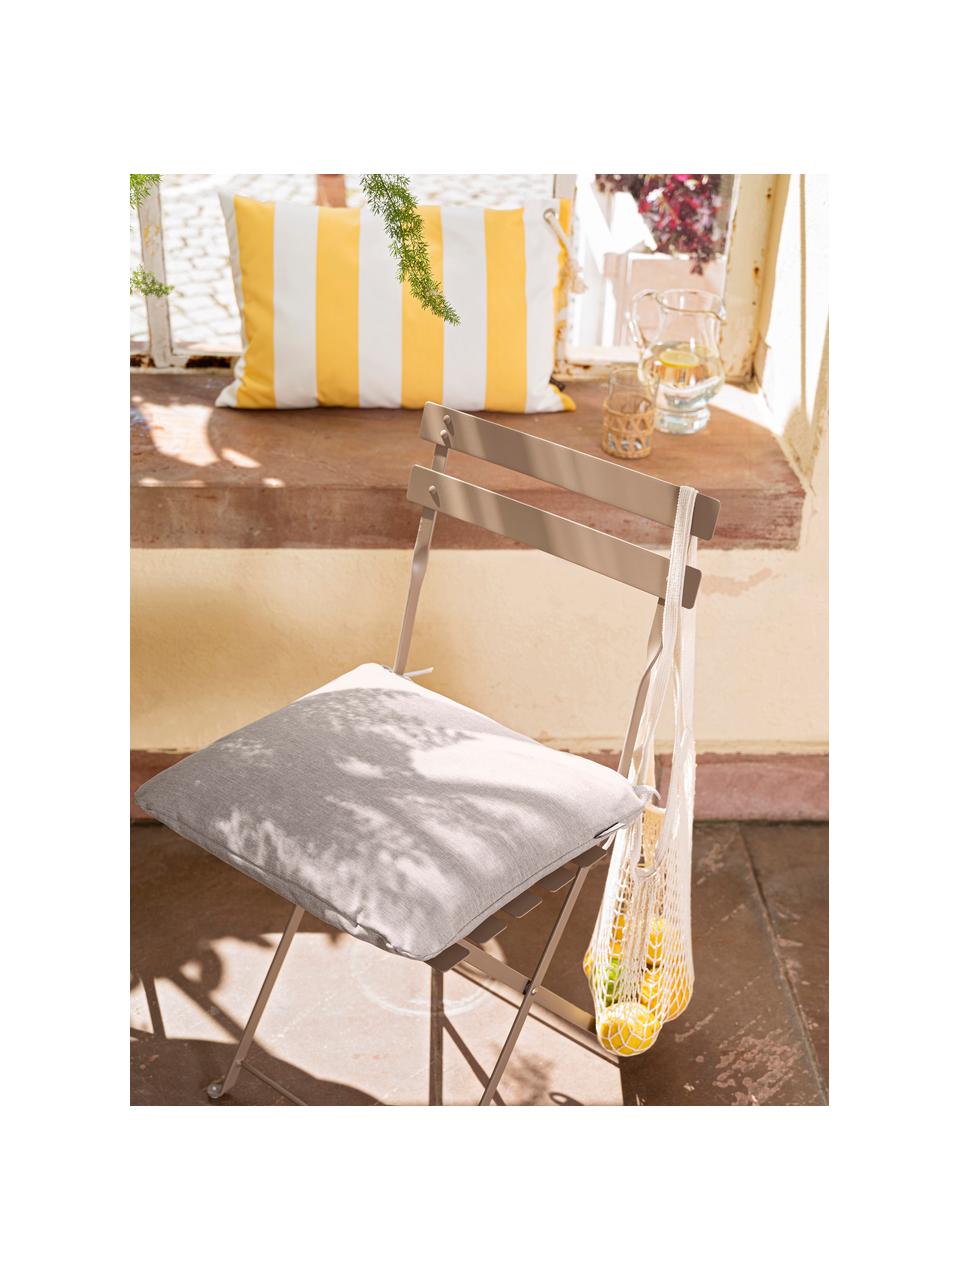 Poszewka na poduszkę zewnętrzną Santorin, 100% polipropylen, Teflon® powlekany, Żółty, biały, S 40 x D 60 cm